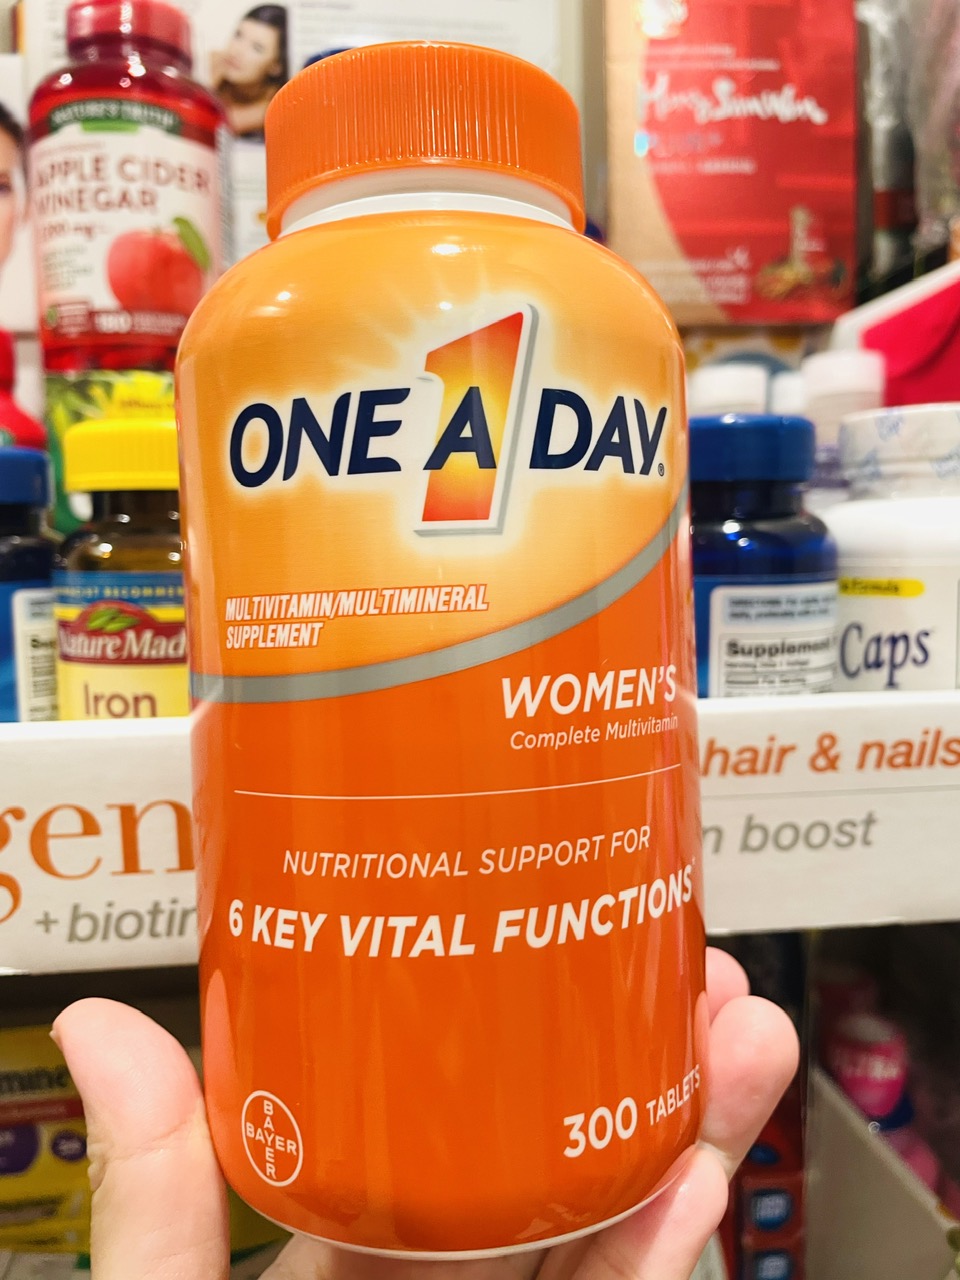 One A Day Women Multi Vitamin - Vitamin bổ sung sức khỏe tổng hợp cho Nữ dưới 50 tuổi